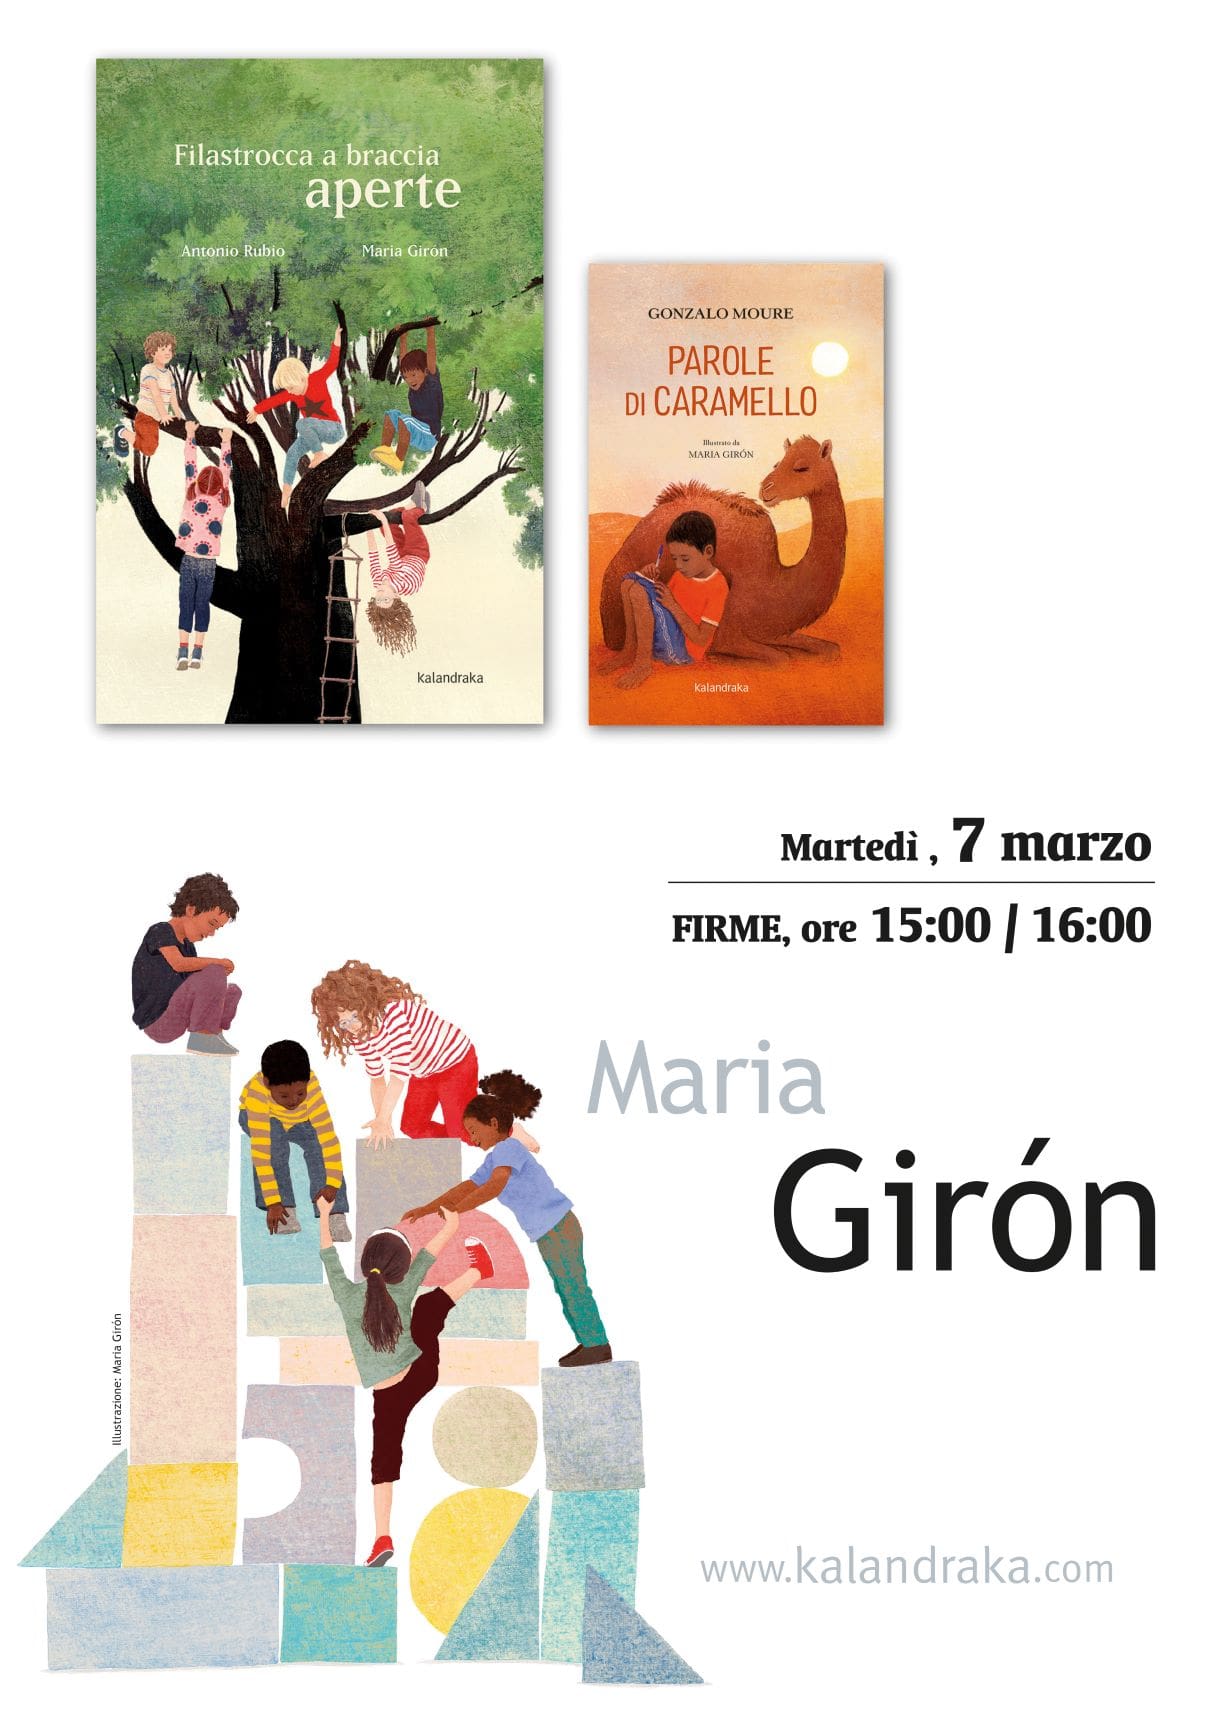 FERIA DE BOLONIA: MARIA GIRÓN FIRMA SU OBRA